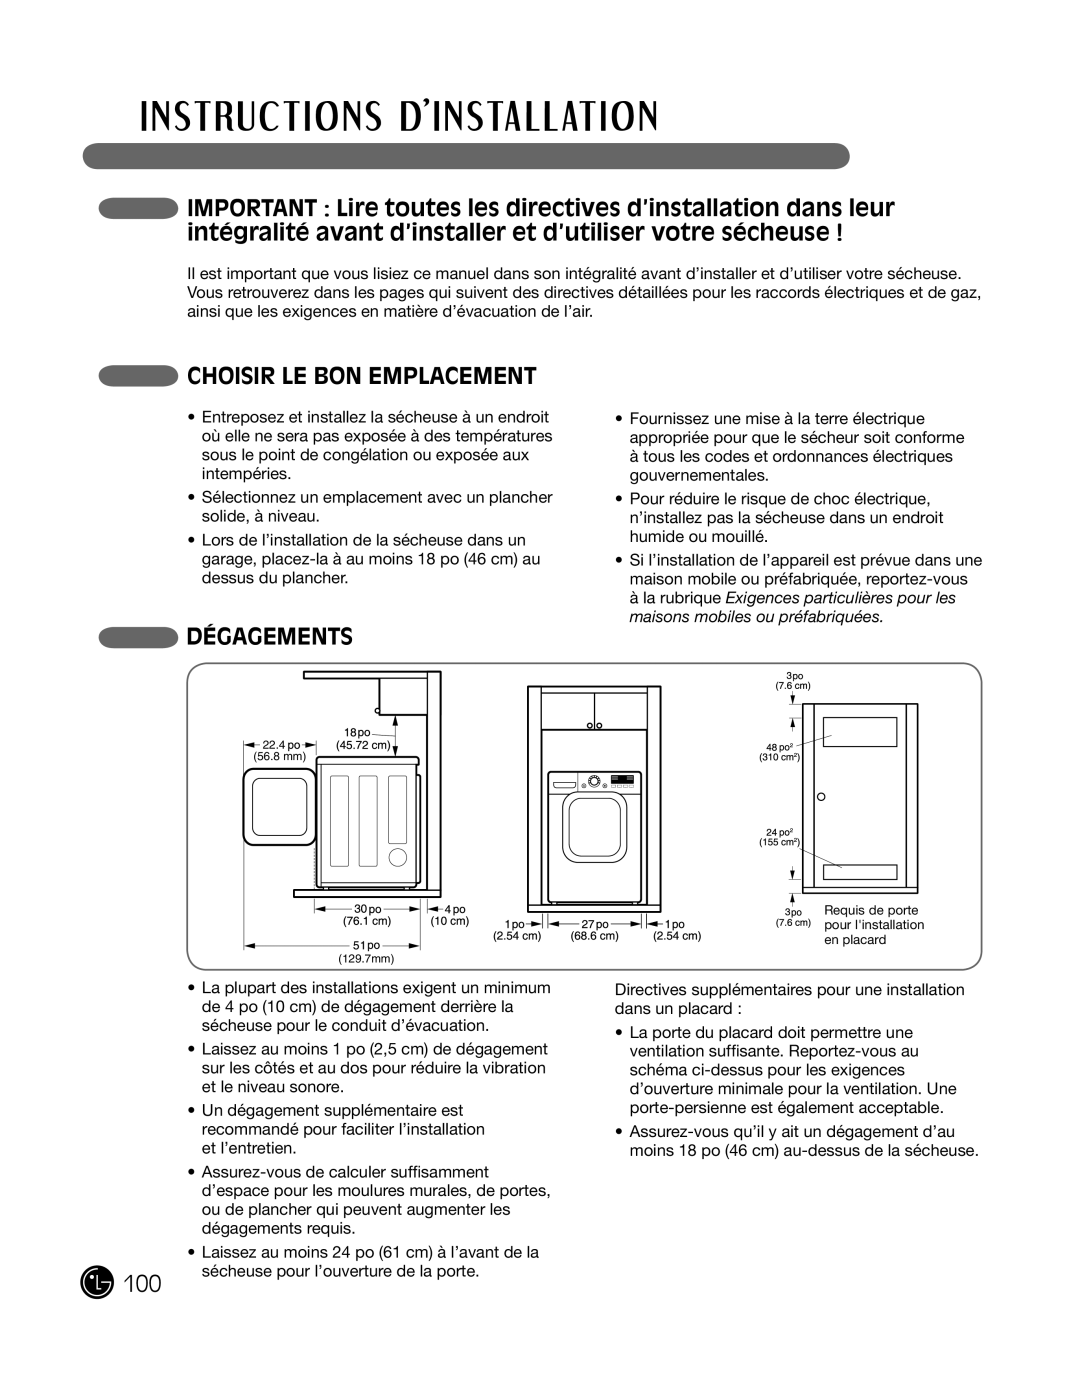 LG Electronics P154 manual cHoisir Le bon eMpLaceMent, déGaGeMents 